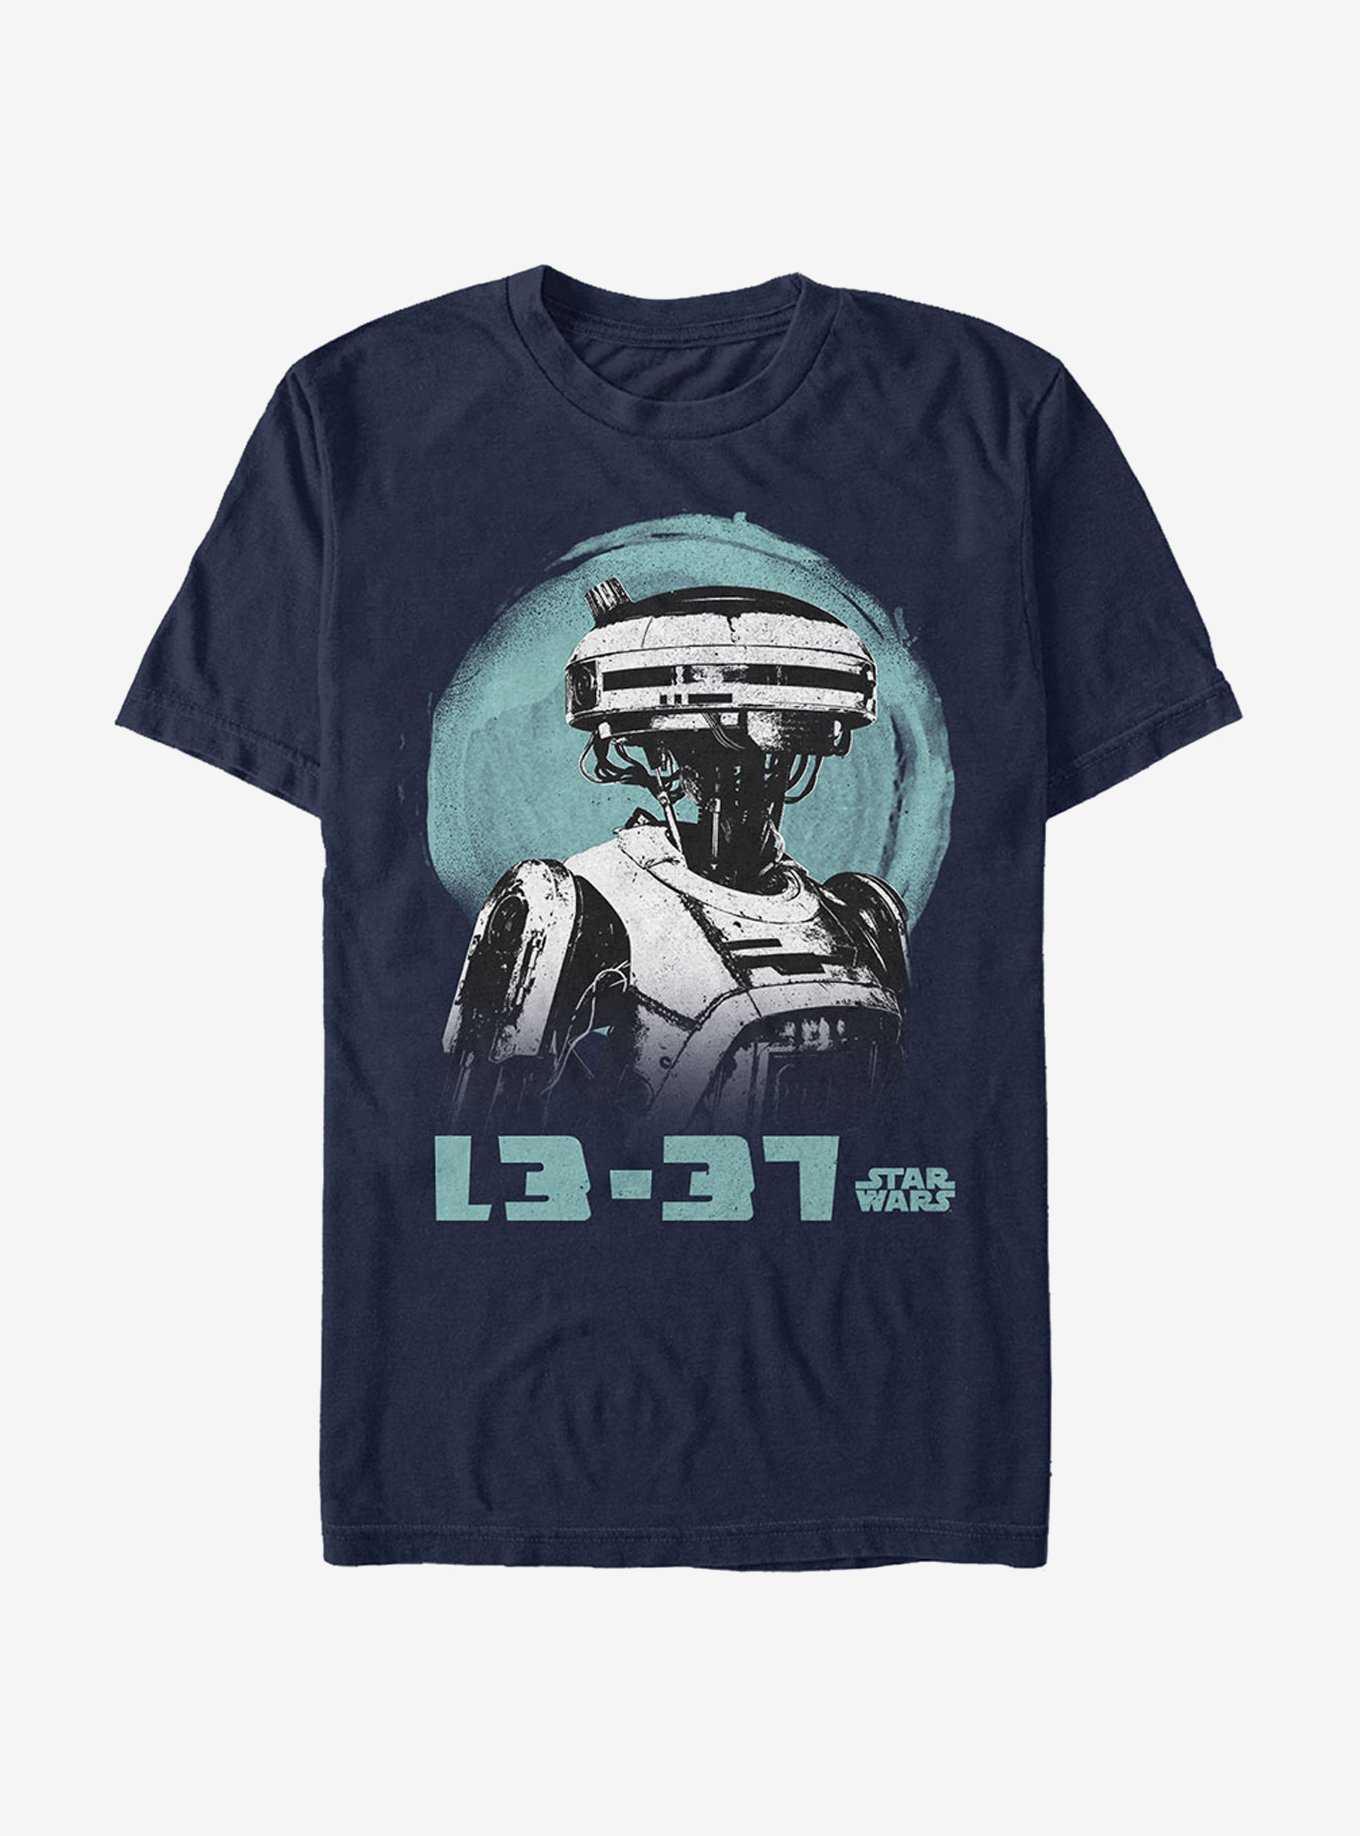 Star Wars L3-37 Watercolor Print T-Shirt, , hi-res